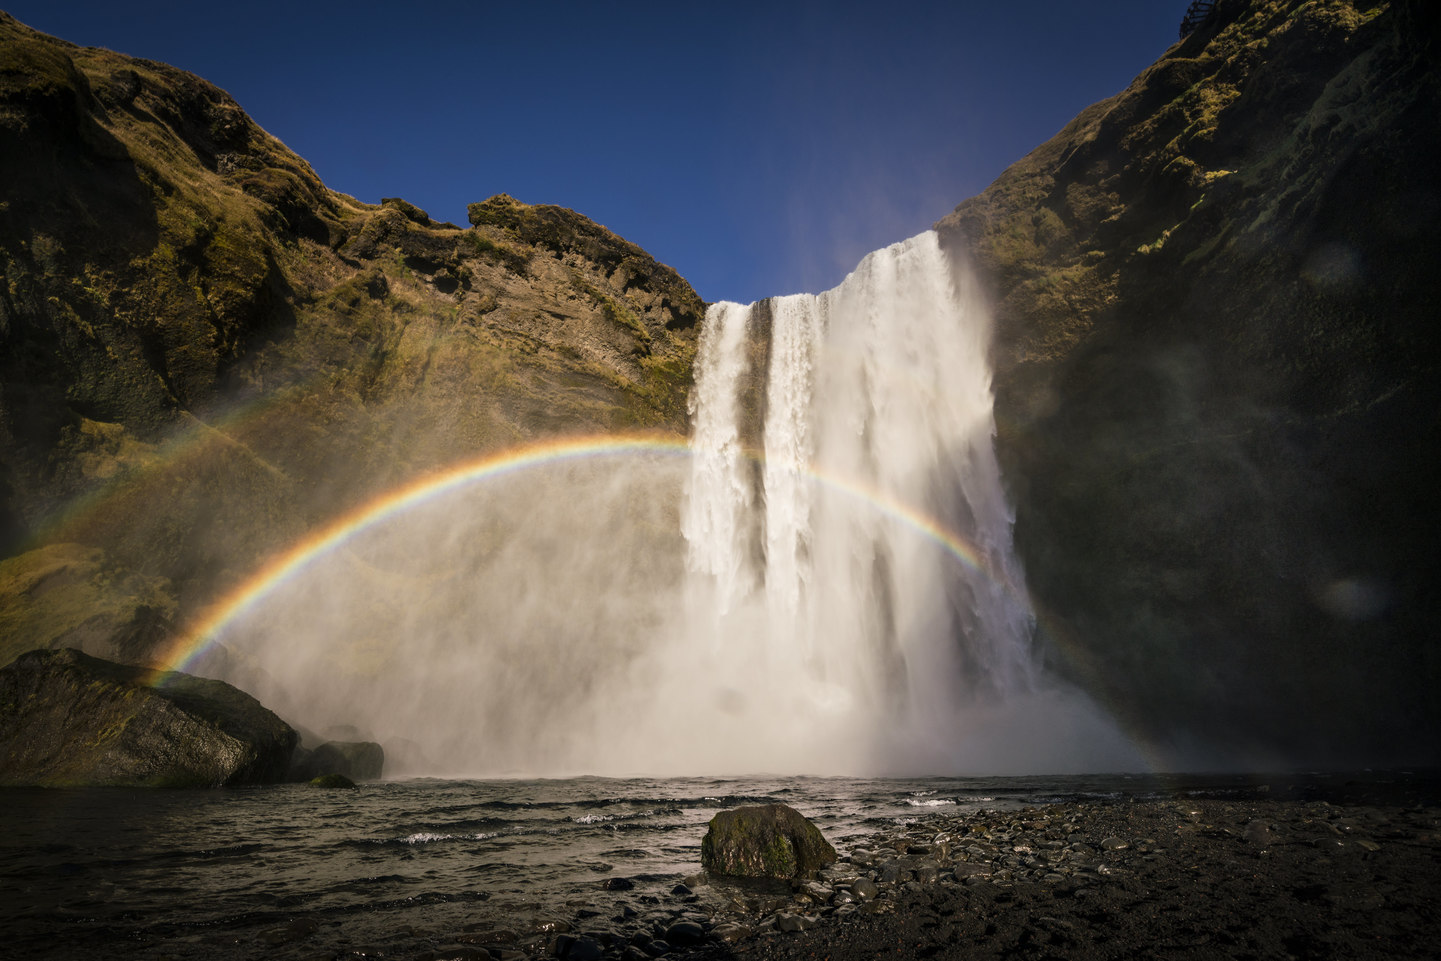 Islandia: Glaciares y auroras en invierno